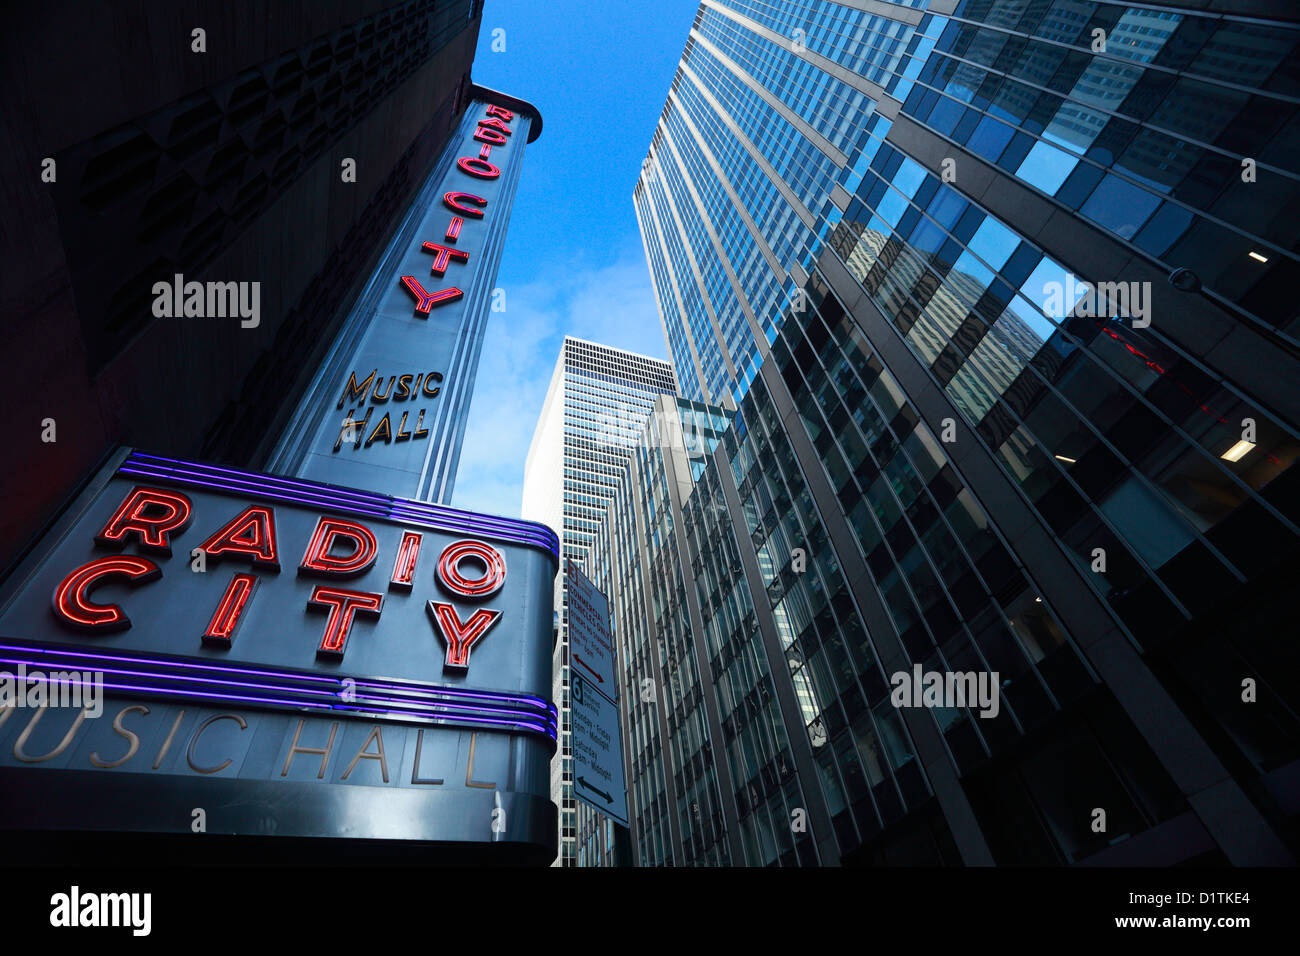 Radio City music hall in Manhattan, New York City. Stock Photo